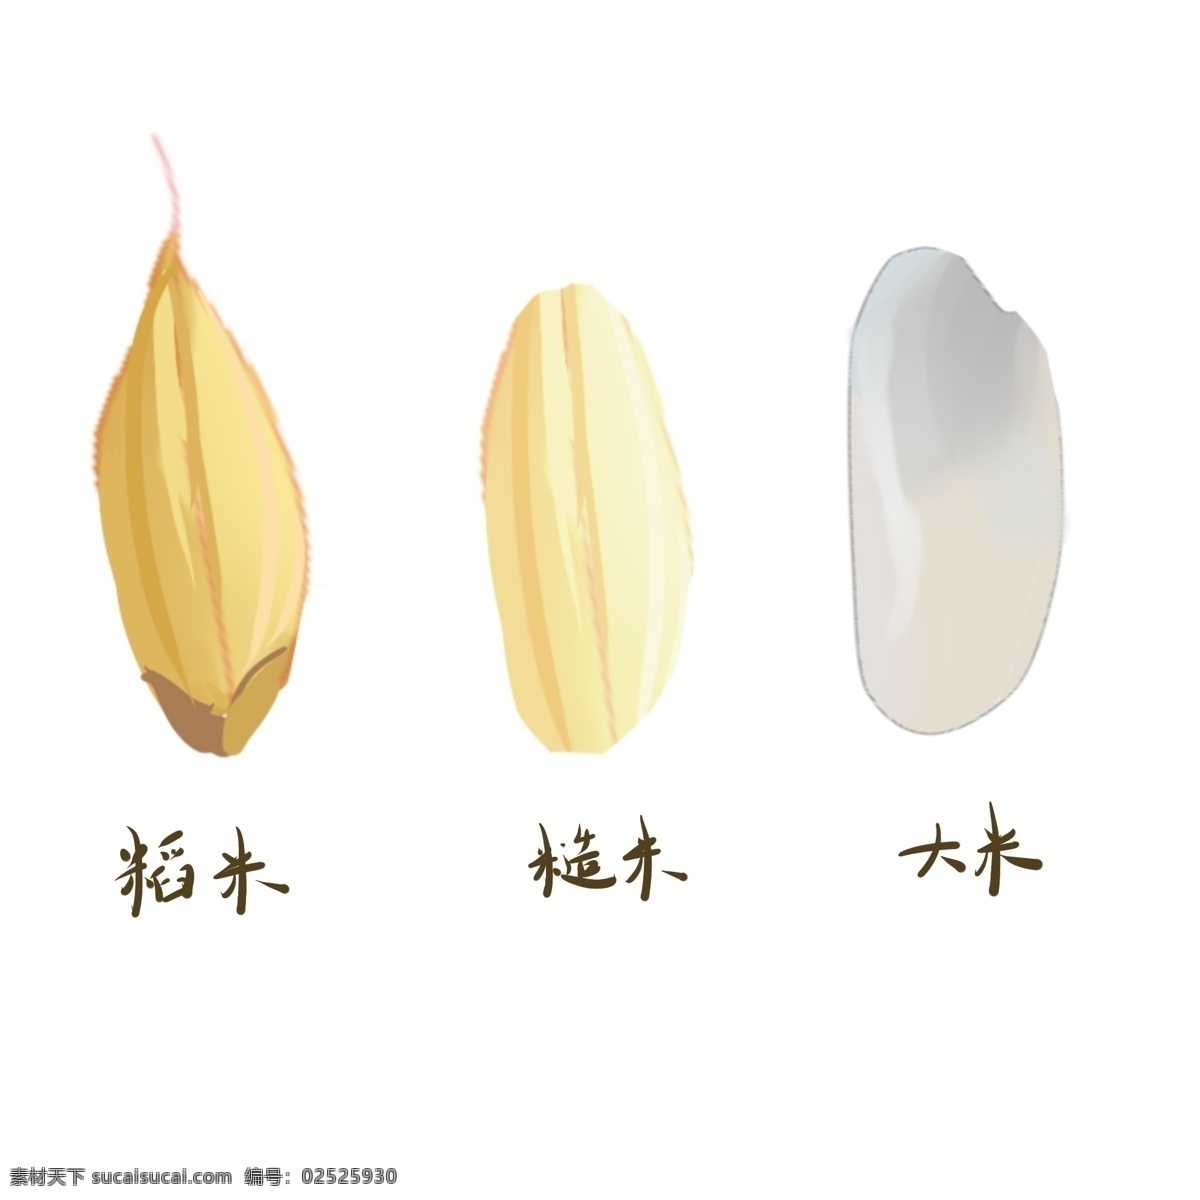 稻米 糙米 大米 手绘 区别 插画 创意大米 糙米插画 稻米插画 米类区分插画 食物 五谷之分